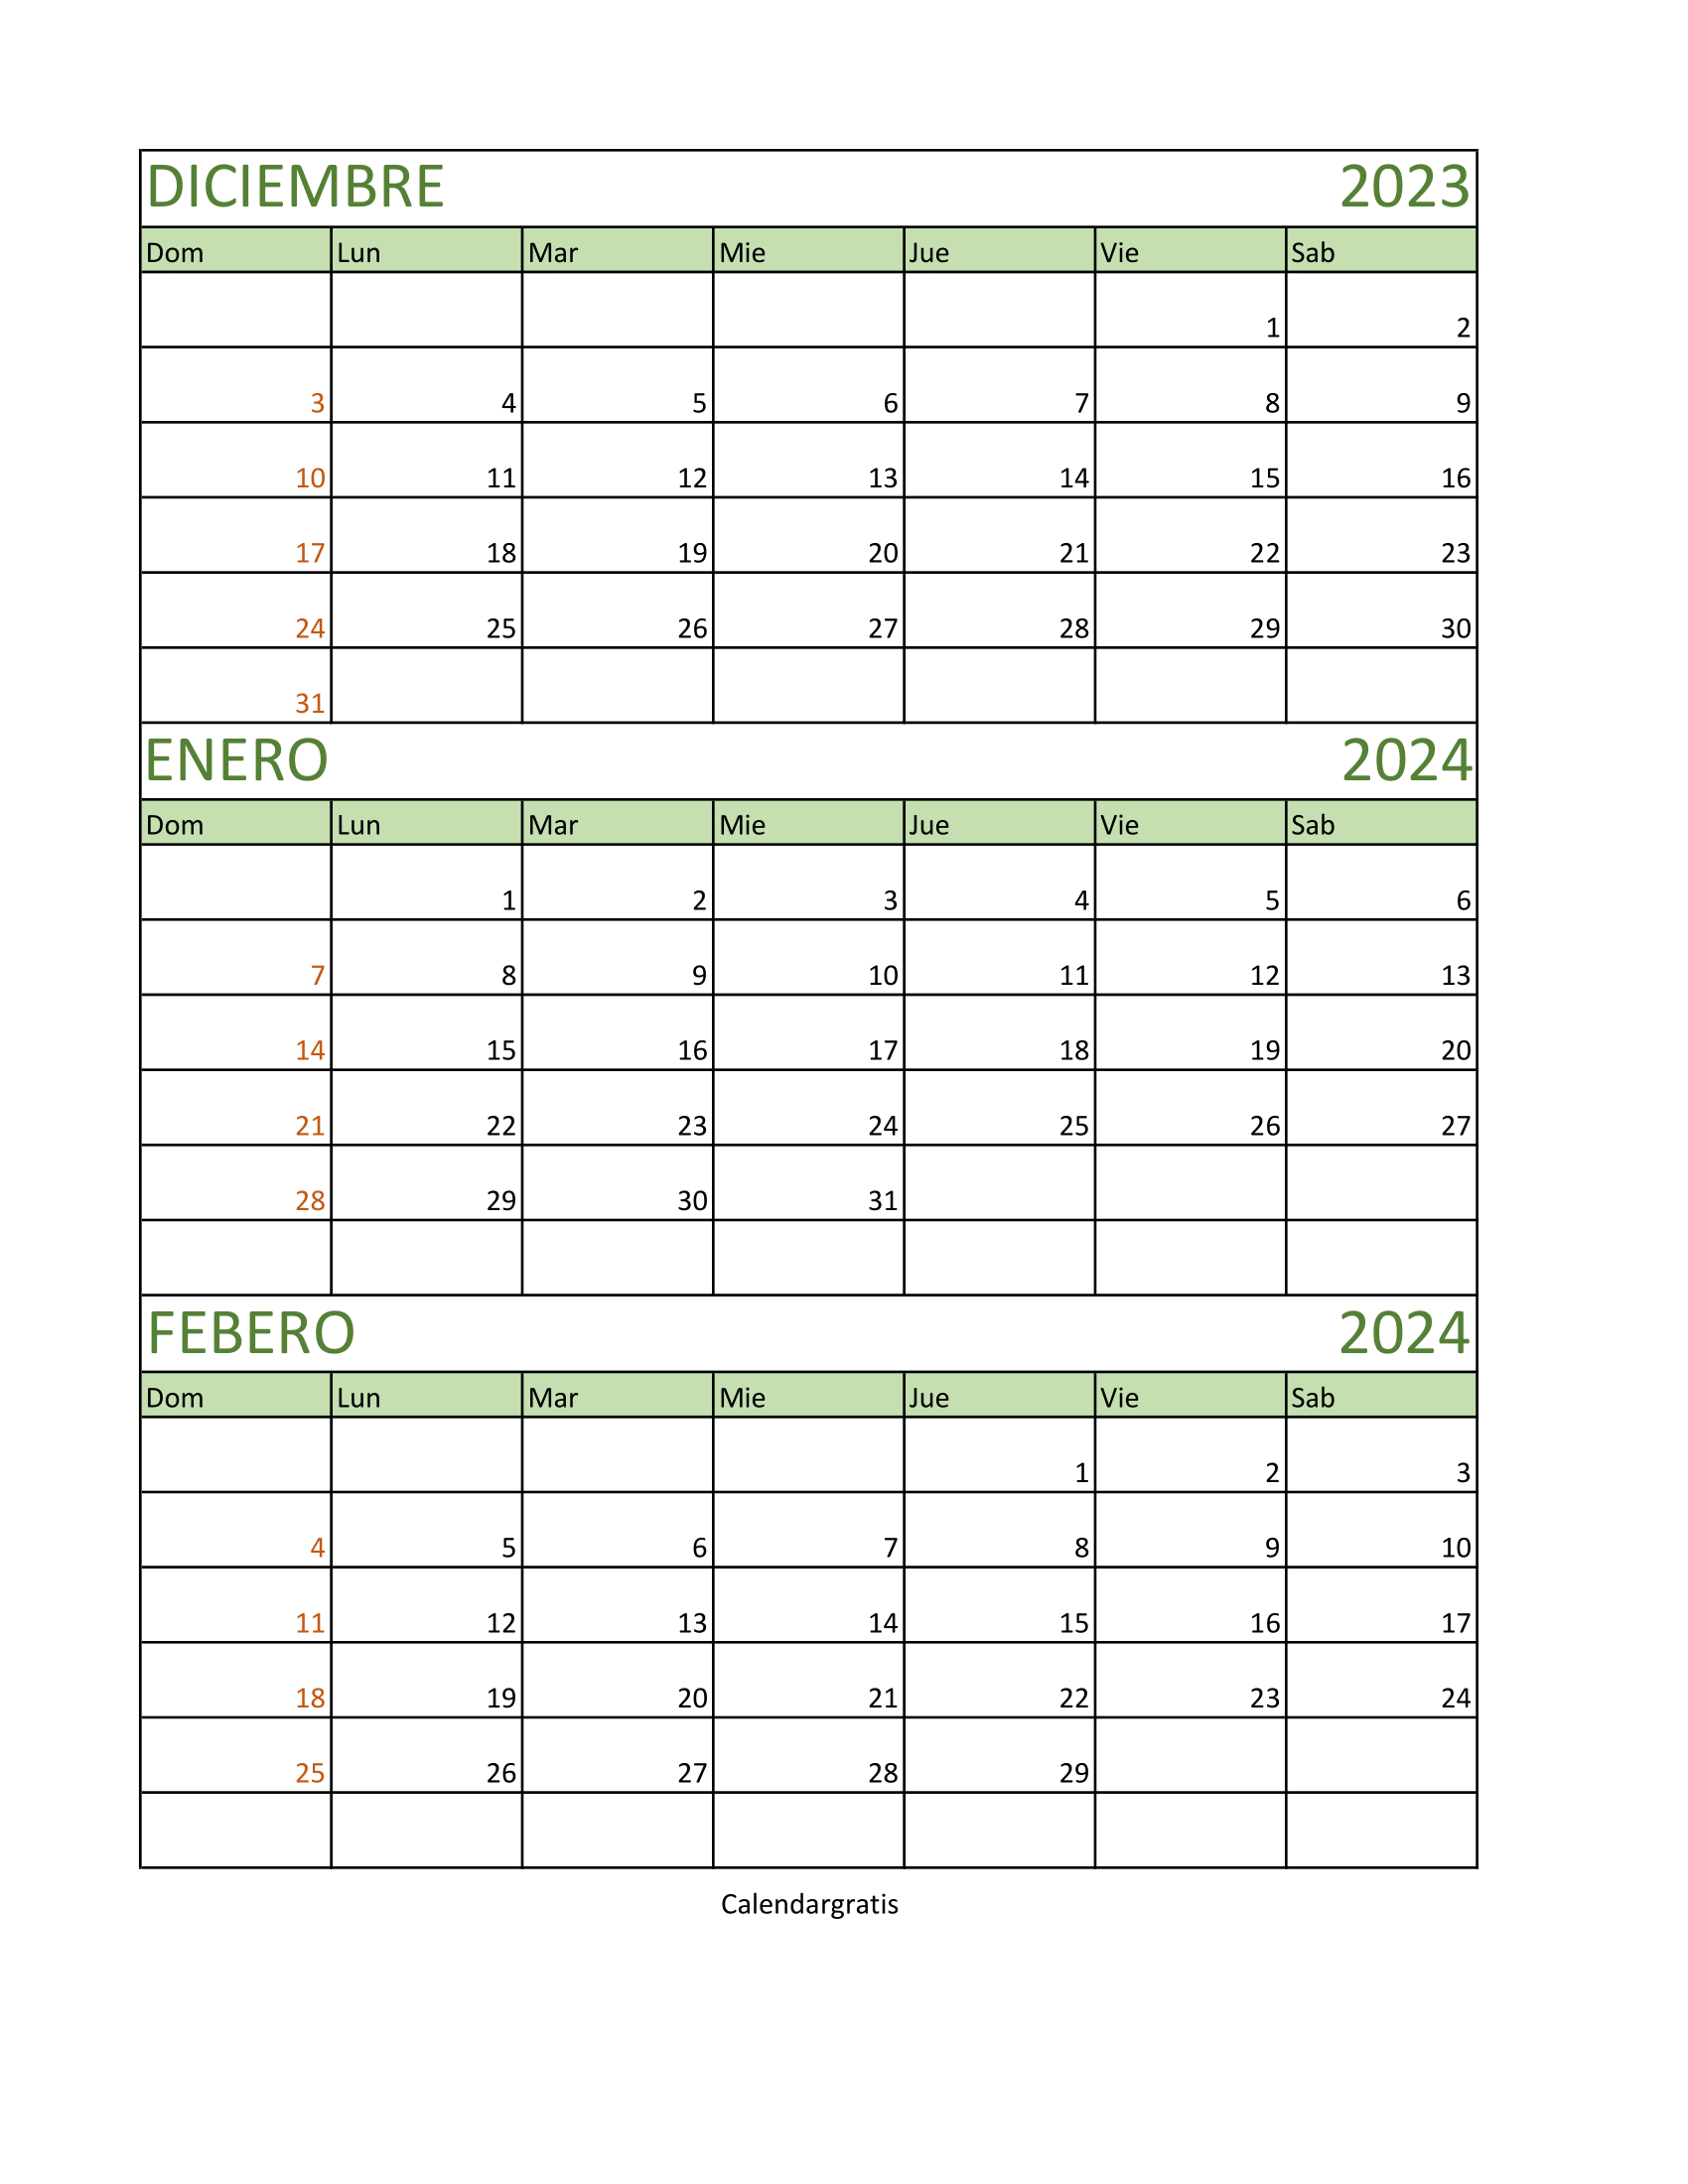 Calendario diciembre 2023 enero y febrero 2024 para imprimir imagen